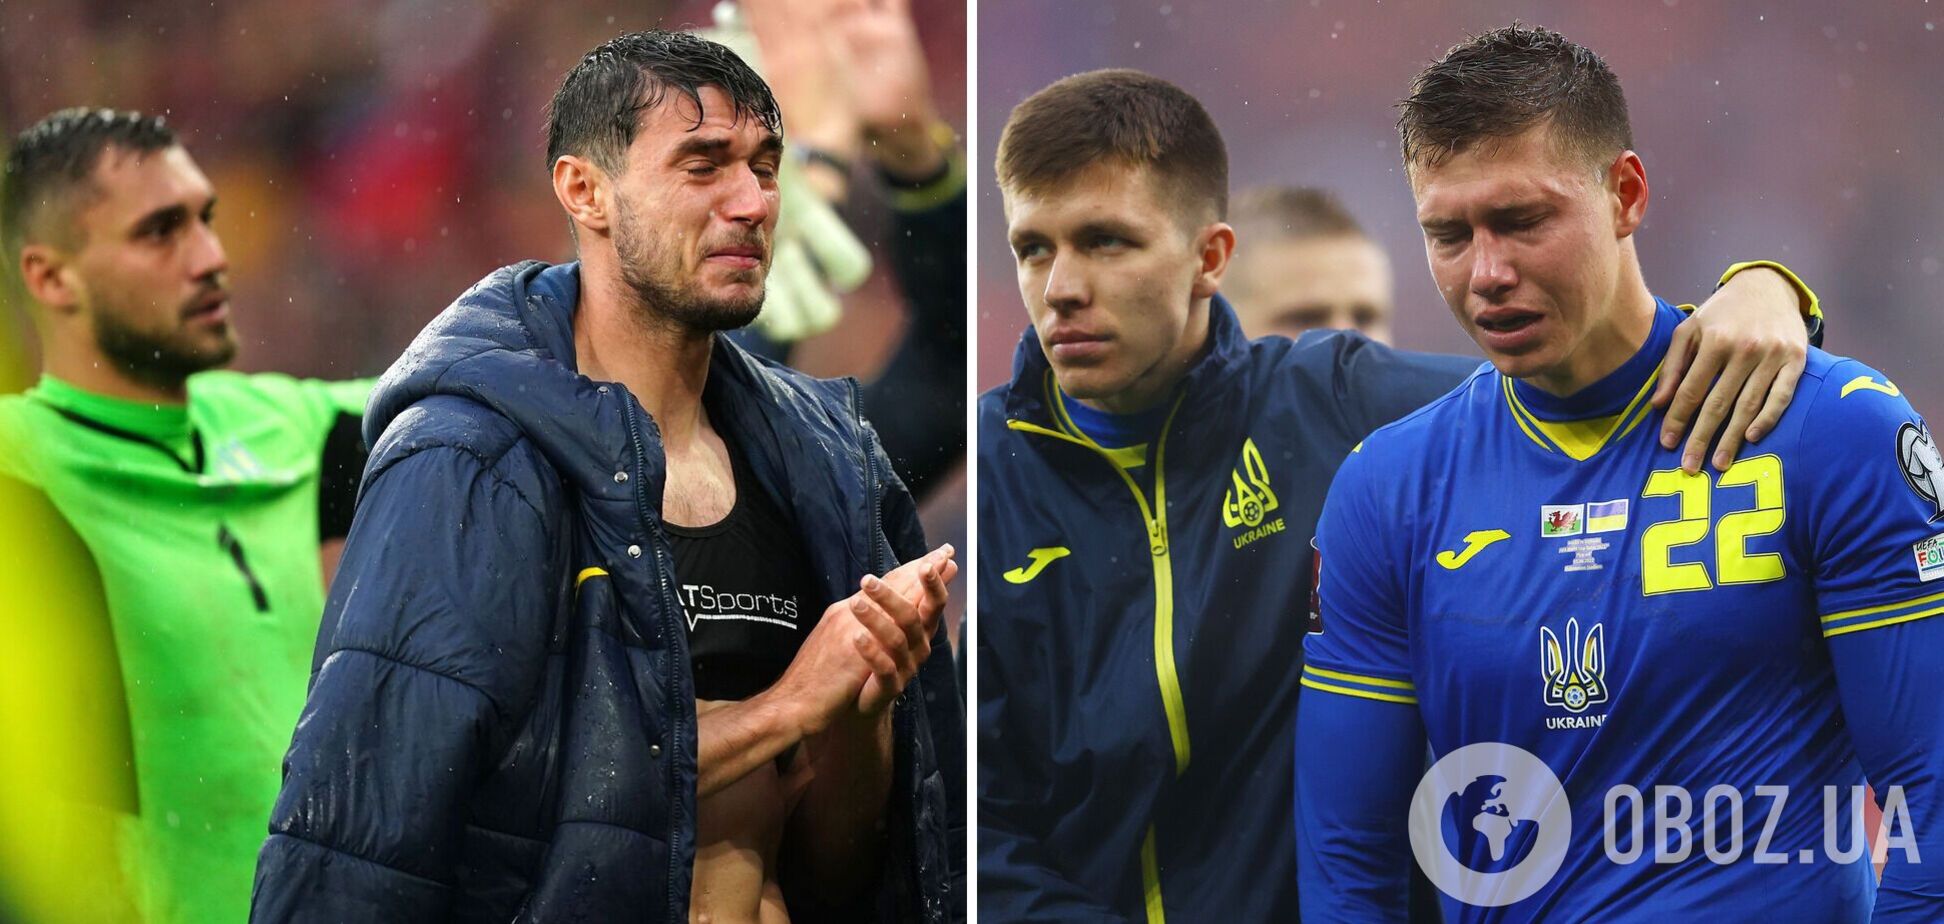 'Не думал, что футбол сделает больно': форвард Украины признался, что хотел увидеть слезы земляков после плей-офф ЧМ-2022